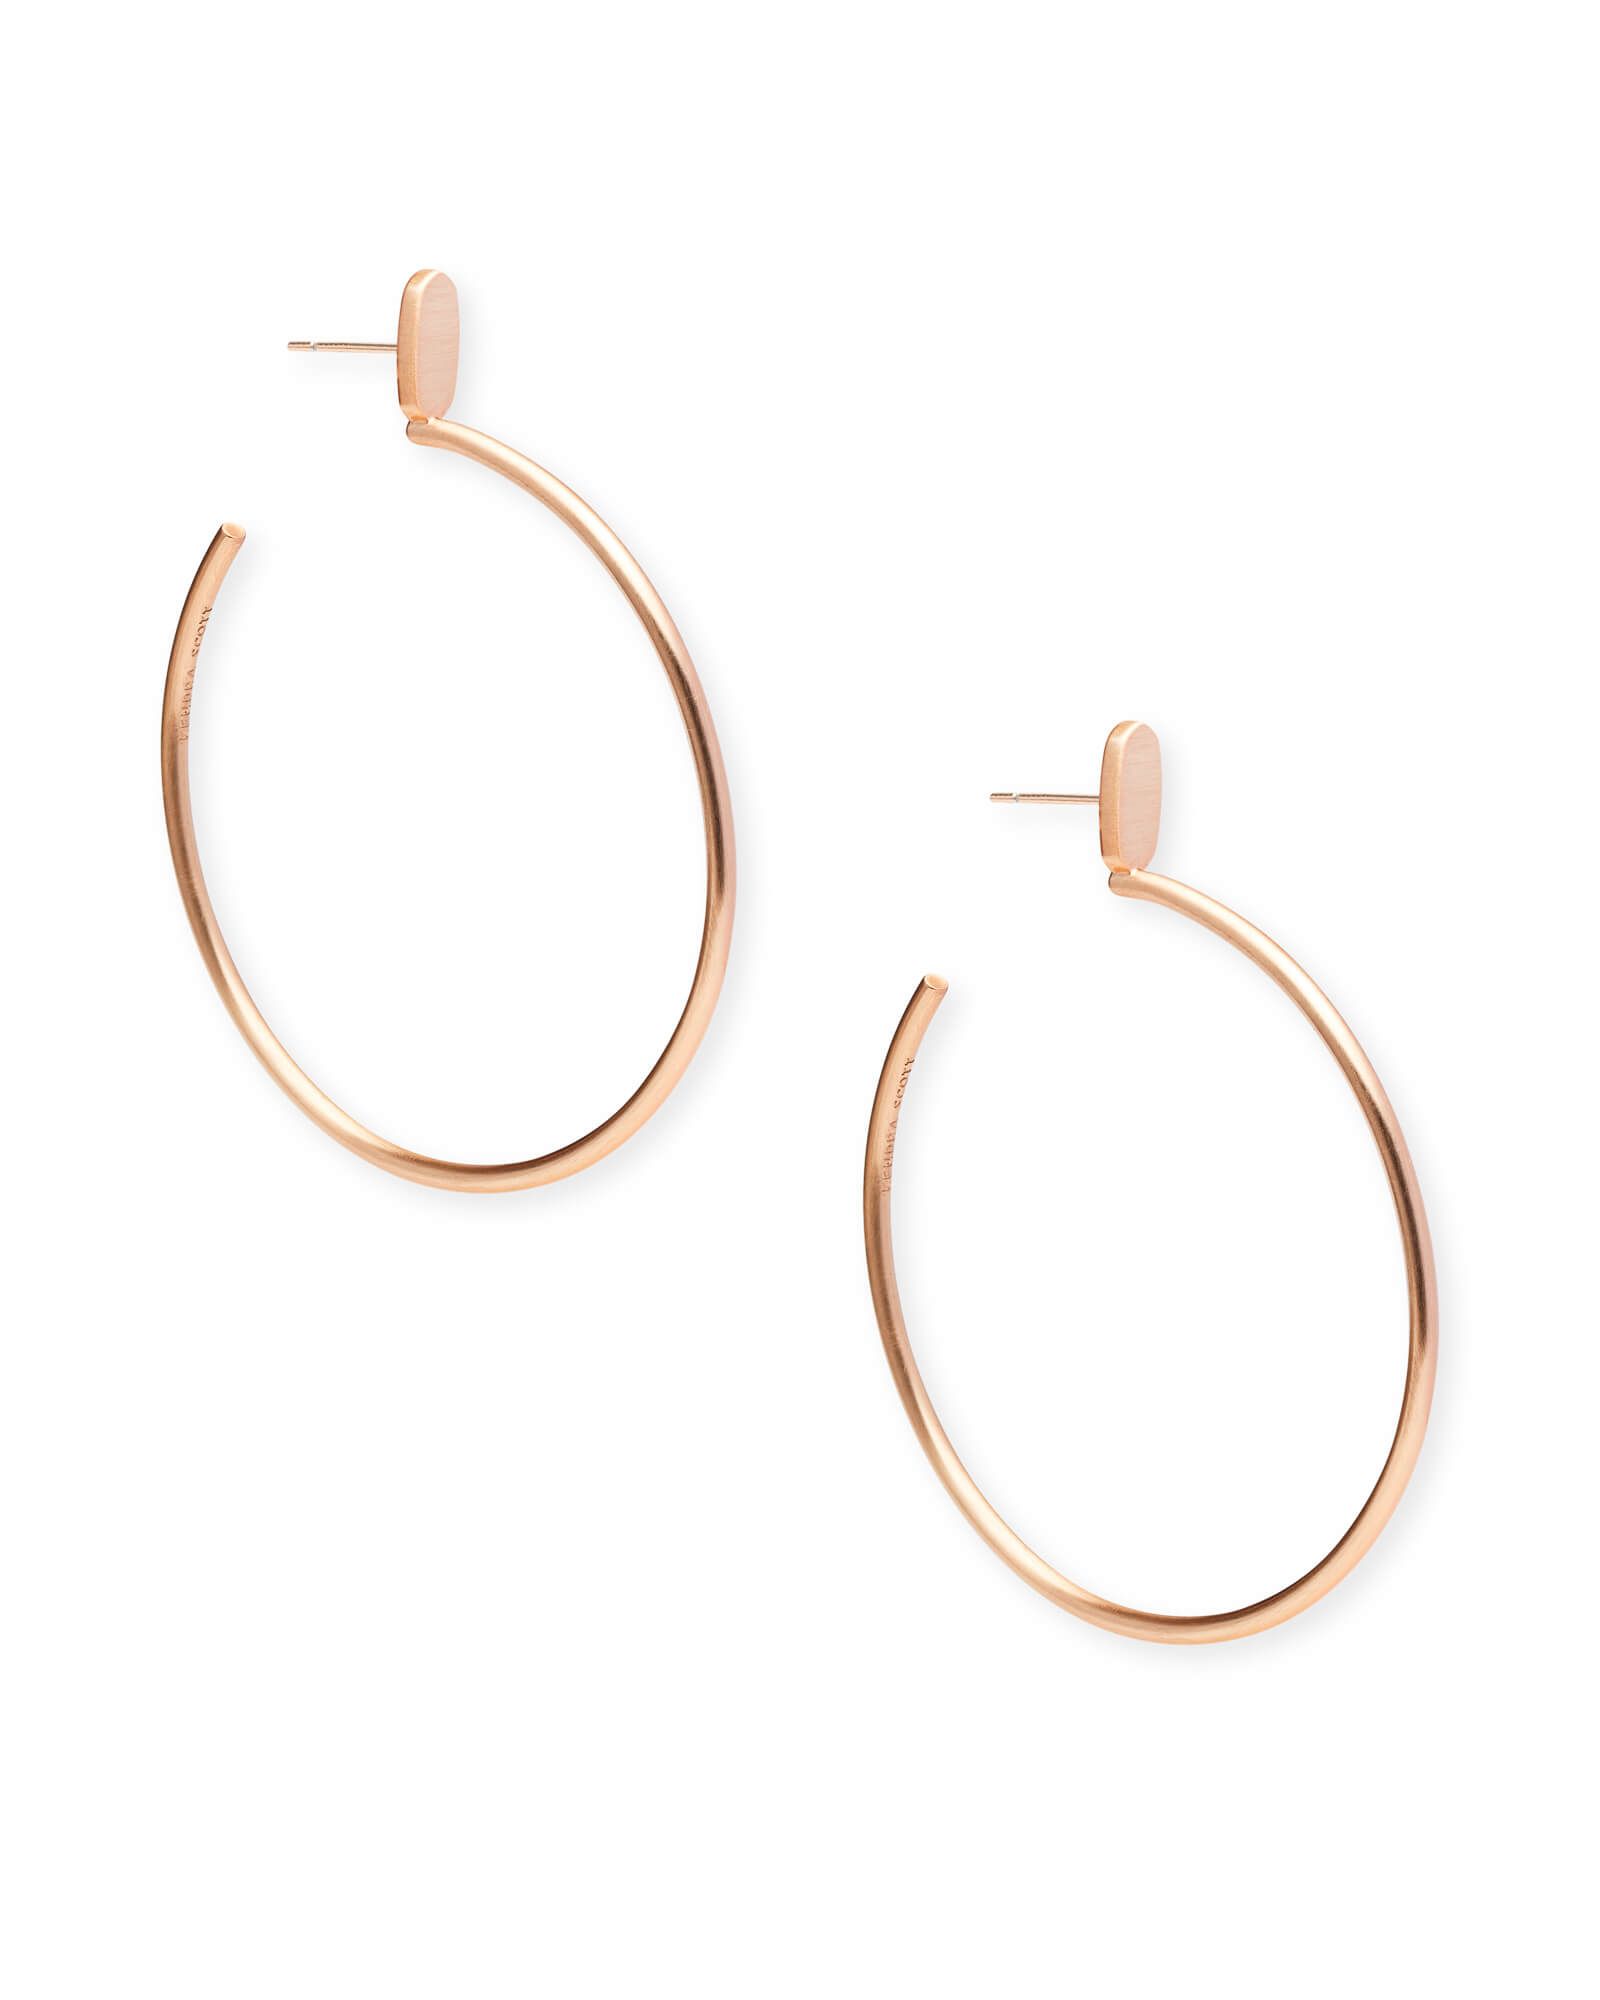 Pepper Hoop Earrings in Rose Gold | Kendra Scott